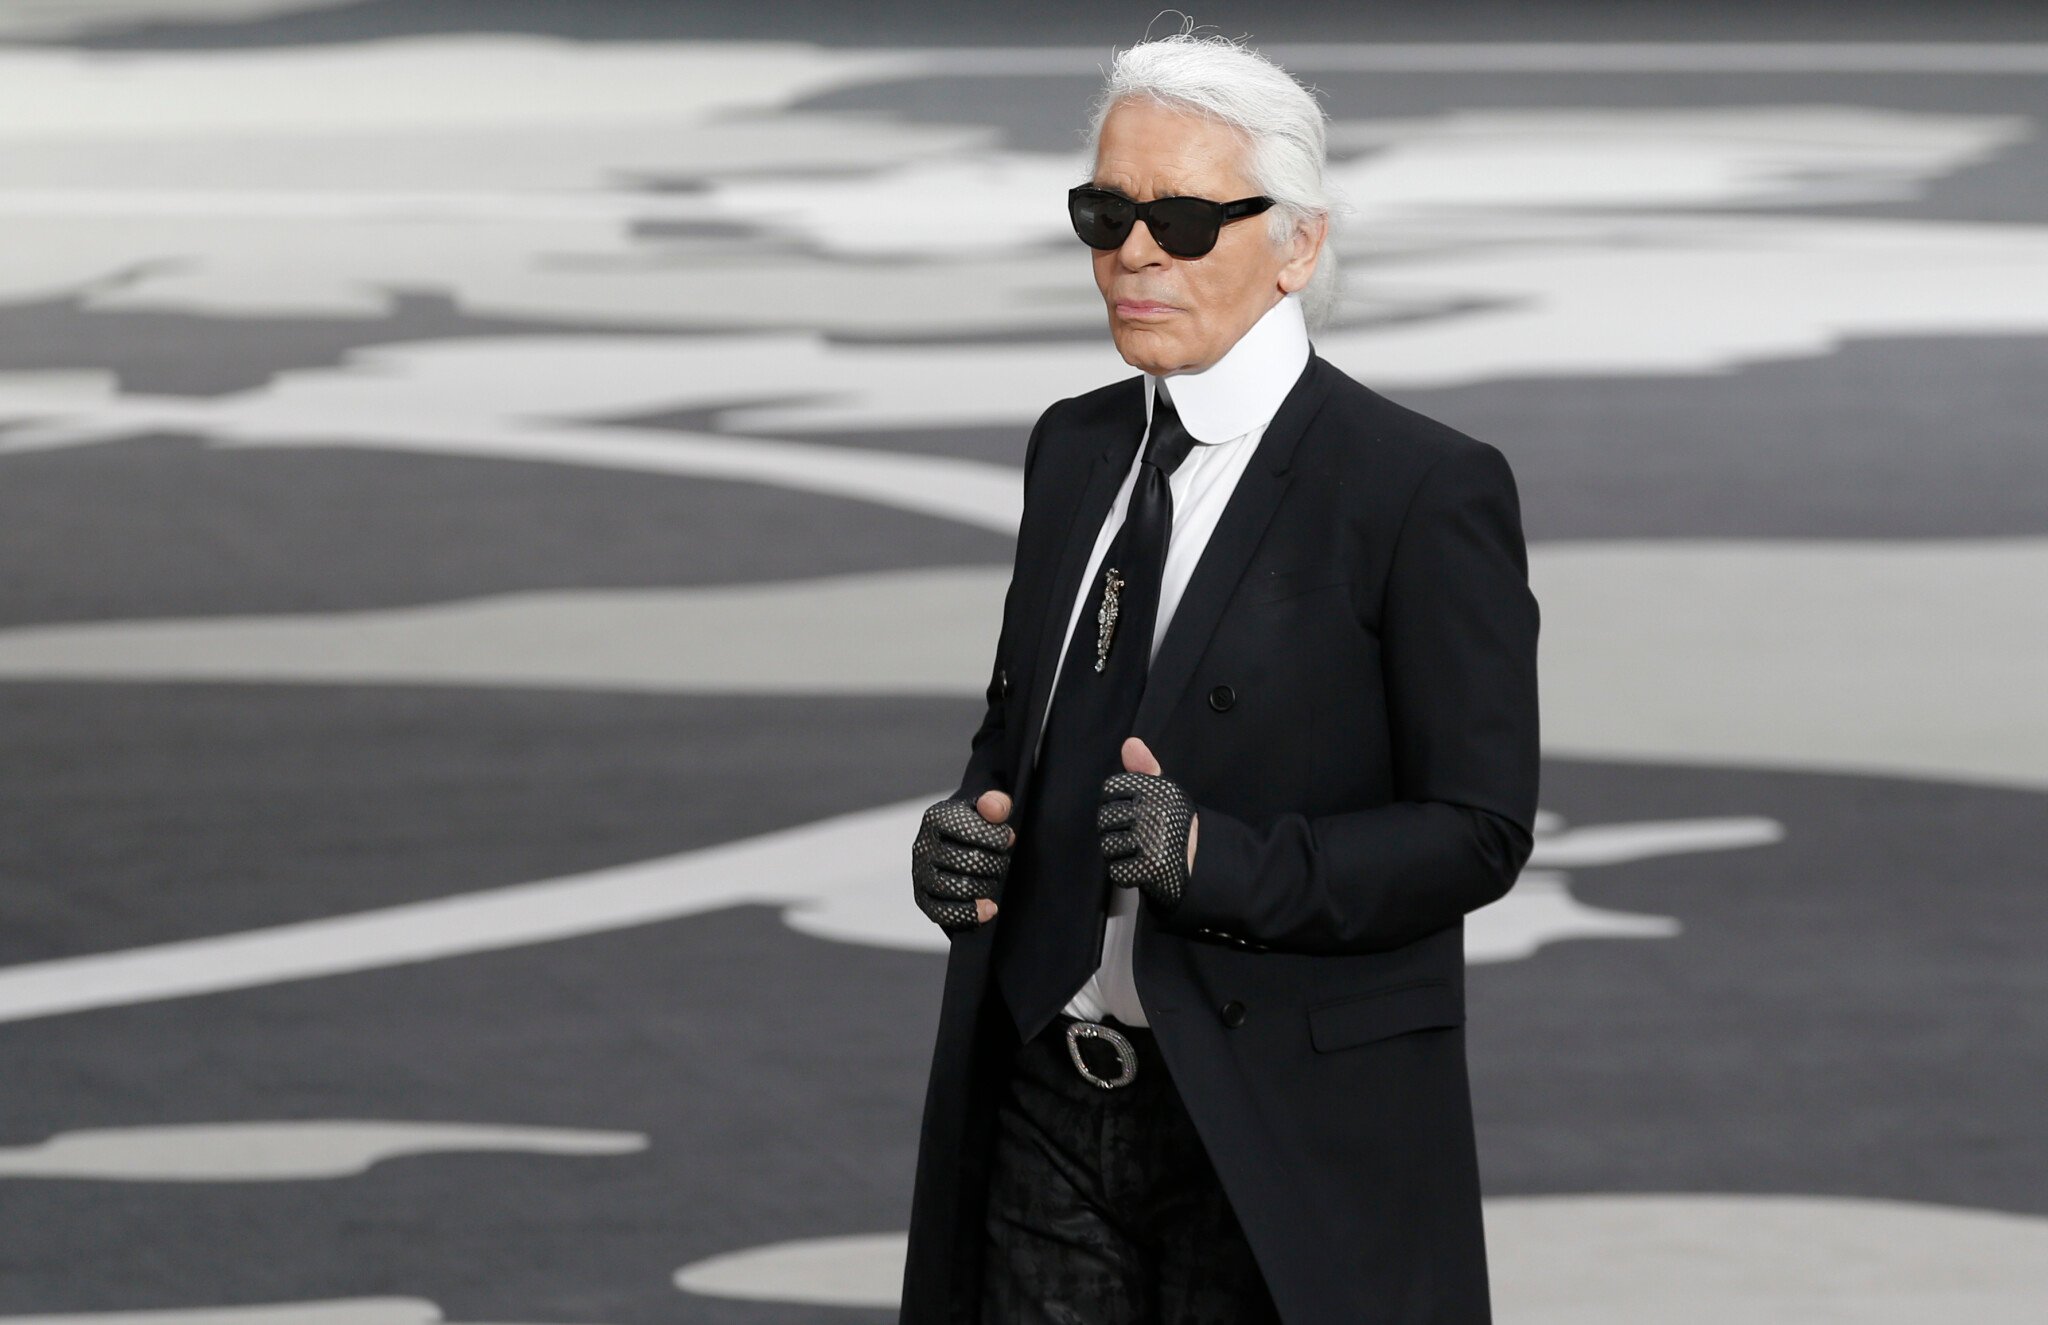 Zomrel slávny módny návrhár Karl Lagerfeld. Počas života pracoval pre viaceré známe značky